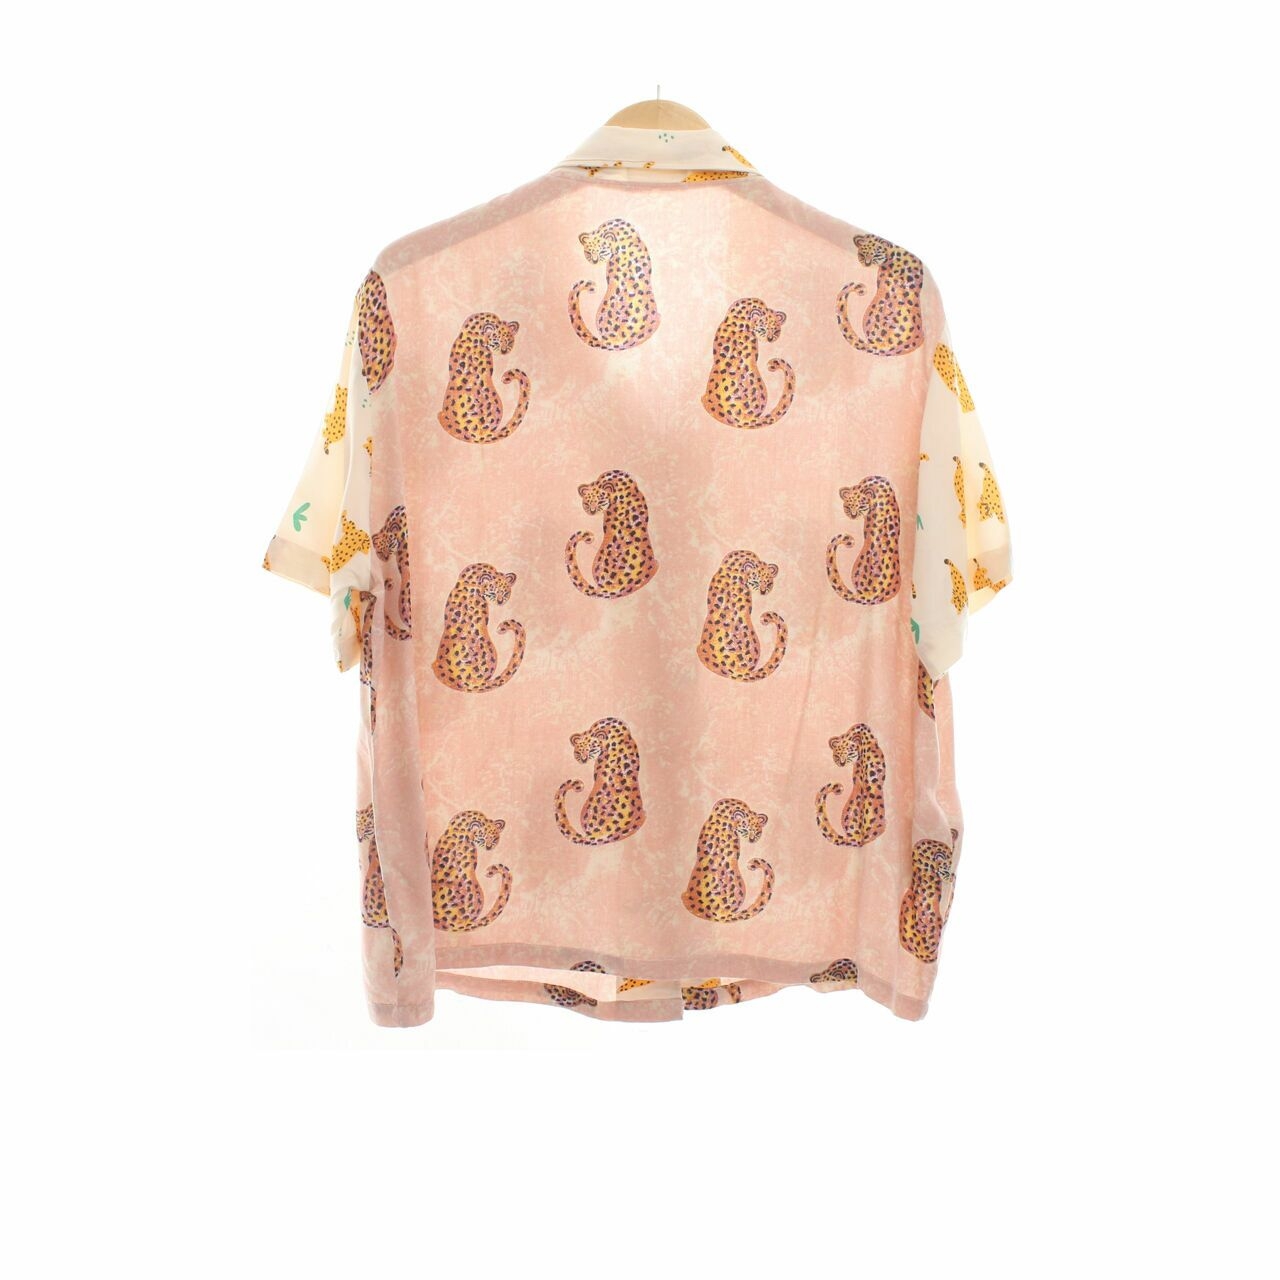 Toko Didiyo Pink/Cream Animal Printed Shirt